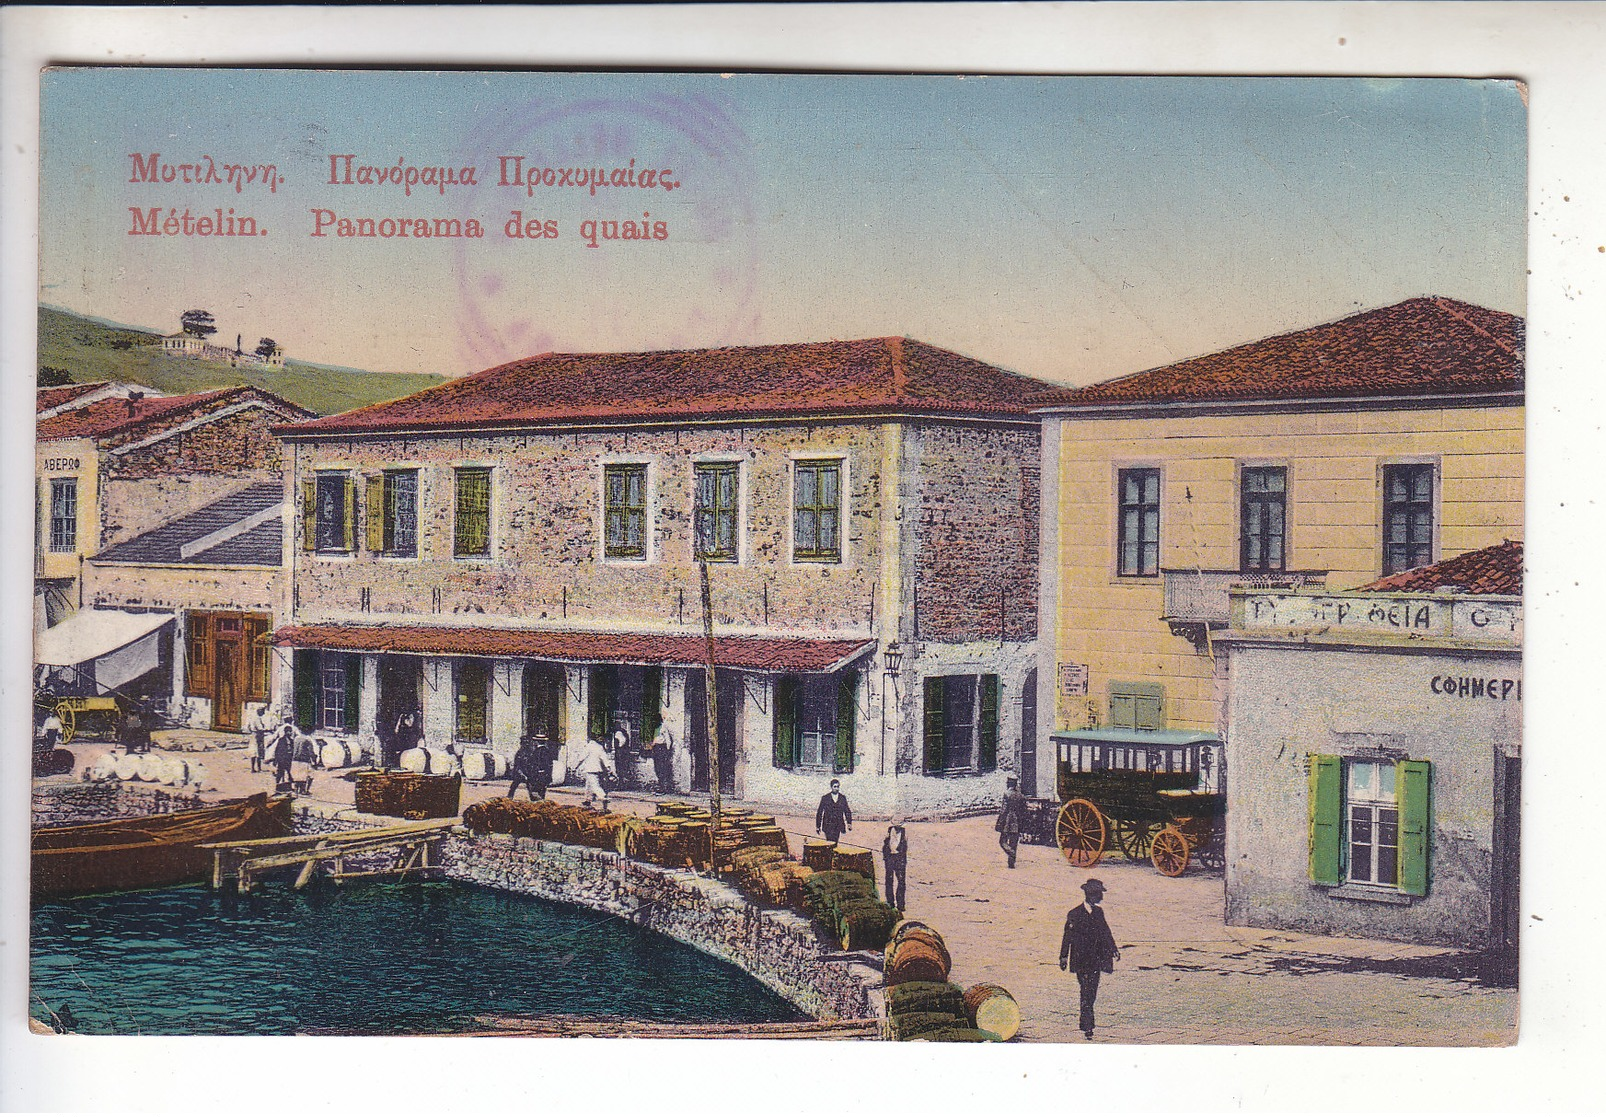 Sp- GRECE - METELIN - Panorama Des Quais - Cachet - 1915 - Griechenland